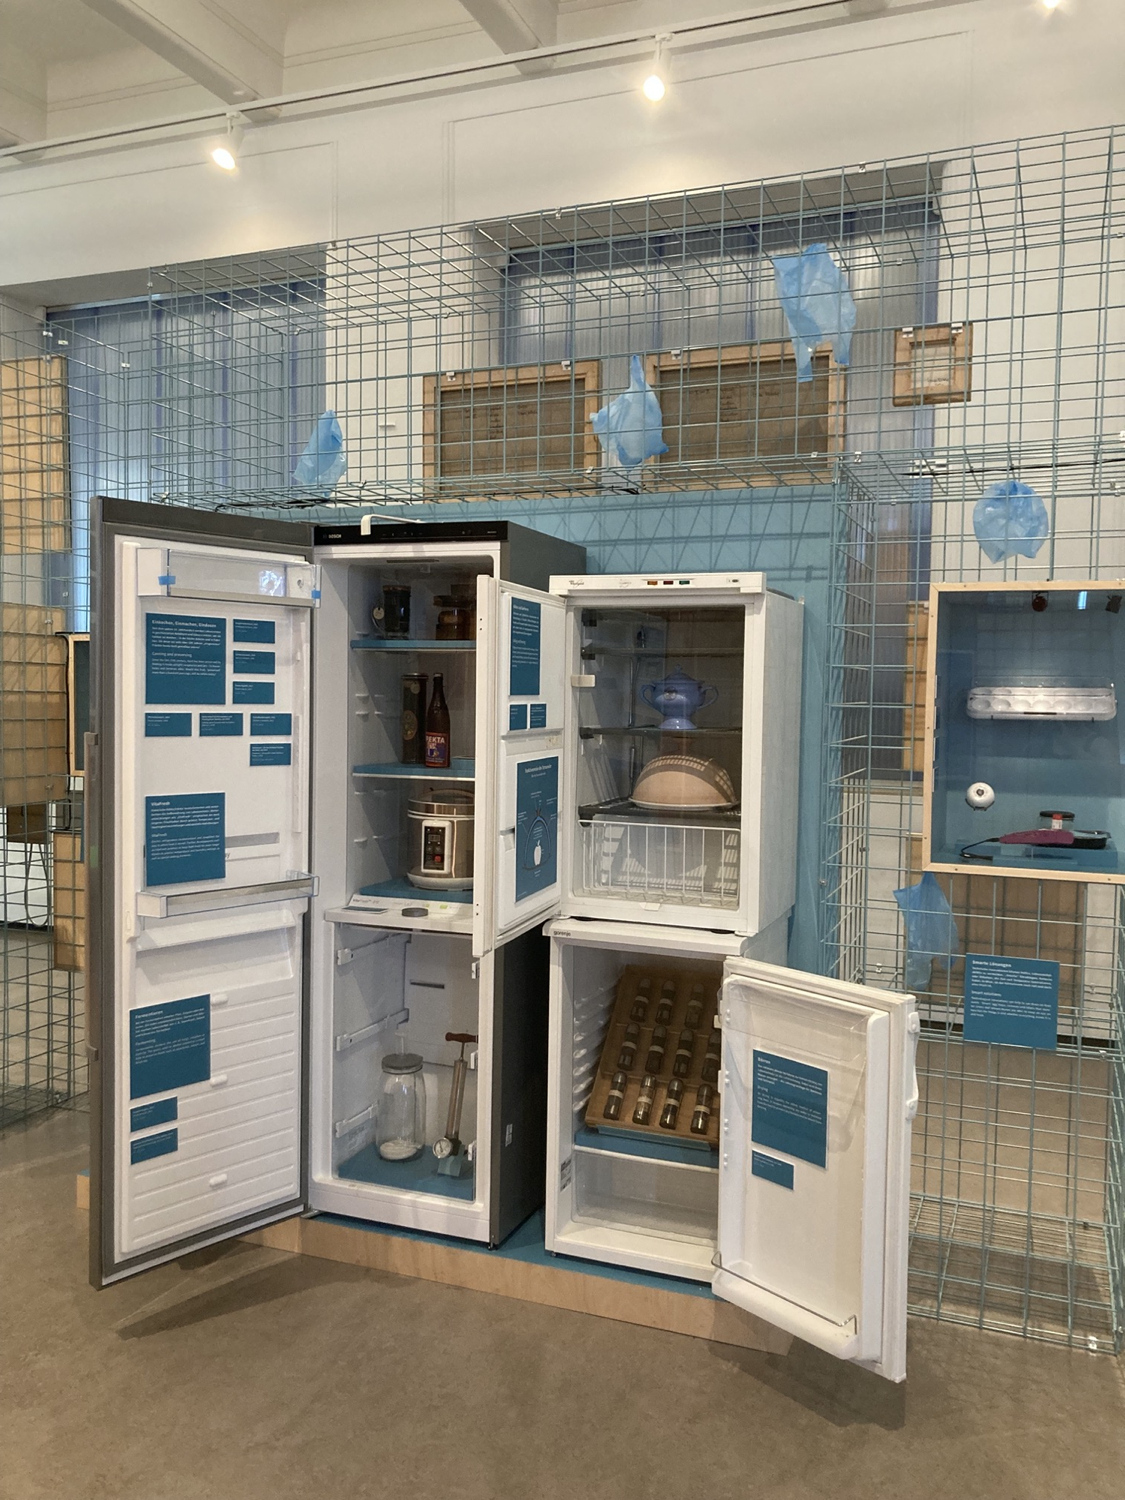 mehrere Kühlschränke aus verschiedenen Epochen, innerhalb der Kühlschränke sind andere Methoden der Kühlung von Lebensmitteln ausgestellt